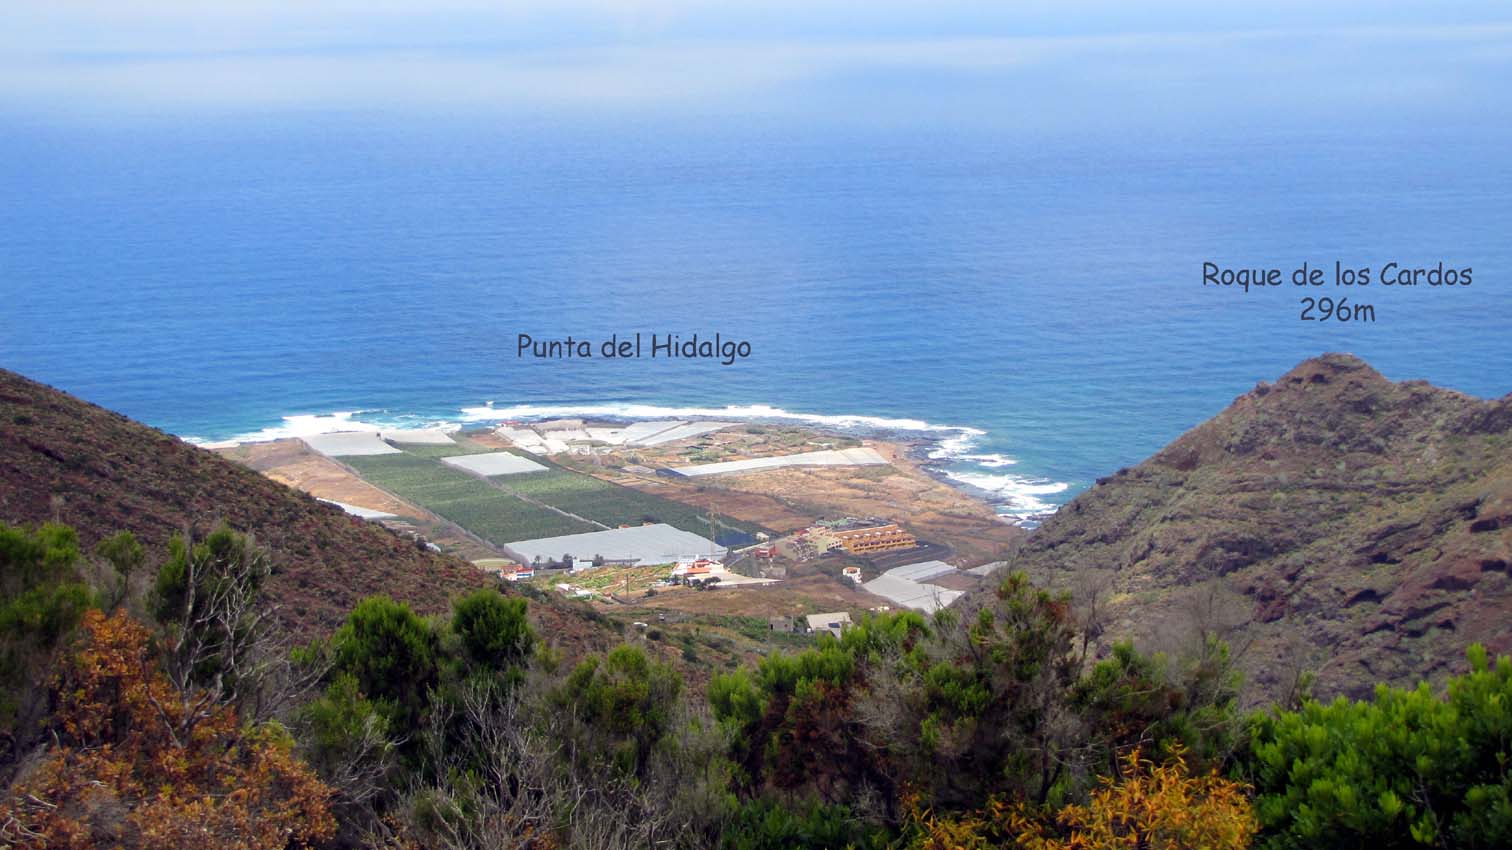 La vue sur la Punta del Hidalgo est un peu gâchée par les serres en plastique qui envahissent le paysage...